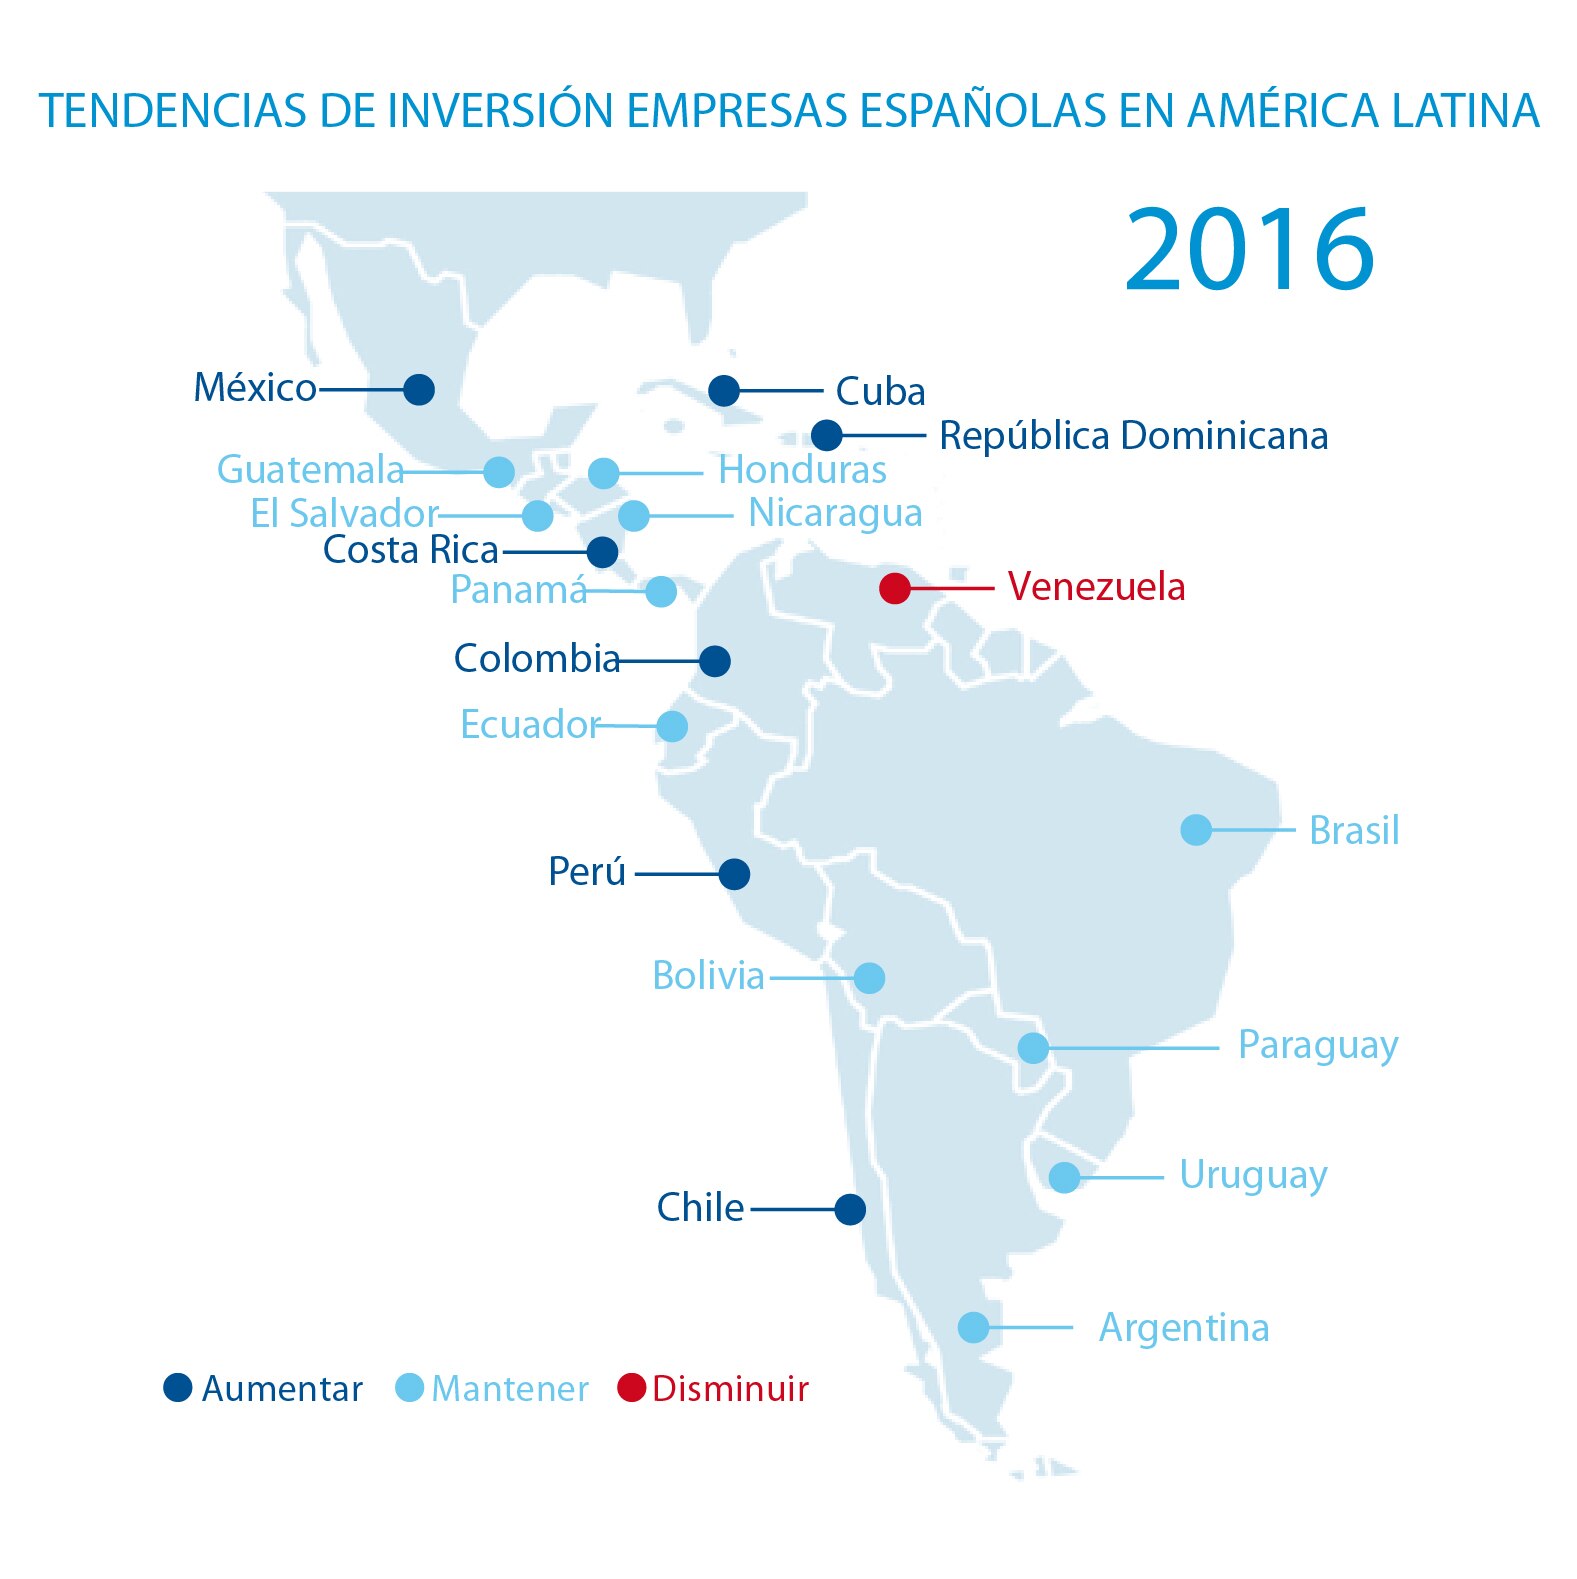 Gráfico tendencias de inversión de empresas españolas en América Latina en 2016